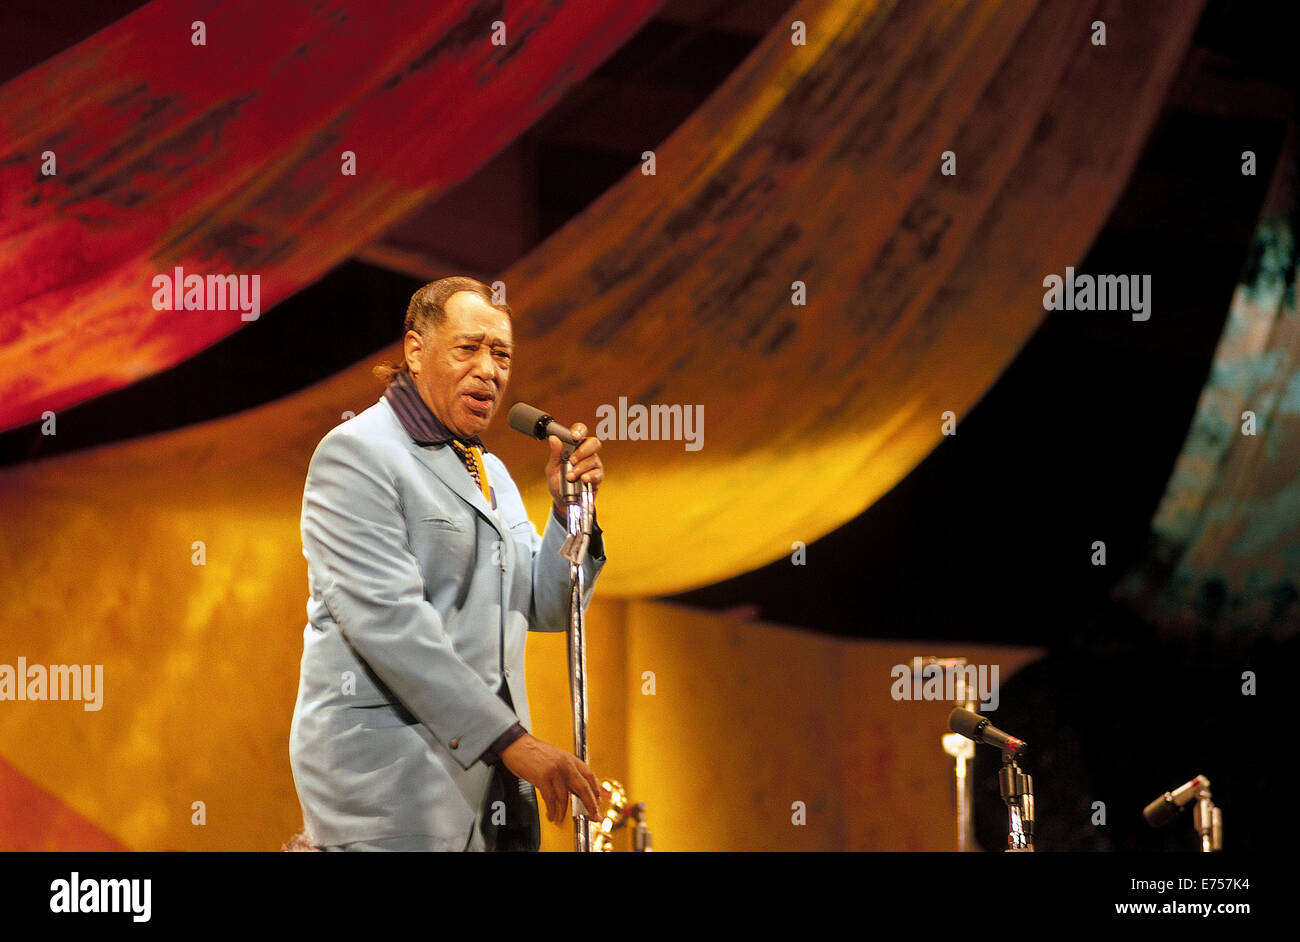 Berühmten Bandleader Duke Ellington spricht die Zielgruppe über sein Orchester, die auf dem 1970 Monterey Jazz Festival auftrat sie die empfohlene Unterhaltung bei dieser jährlichen Veranstaltung in Monterey, Kalifornien, USA waren. Das war gegen Ende des Ellingtons musikalische Karriere, die mehr als 50 Jahren bis zu seinem Tod im Jahr 1974 im Alter von 75 Jahren dauerte. Historisches Foto. Stockfoto